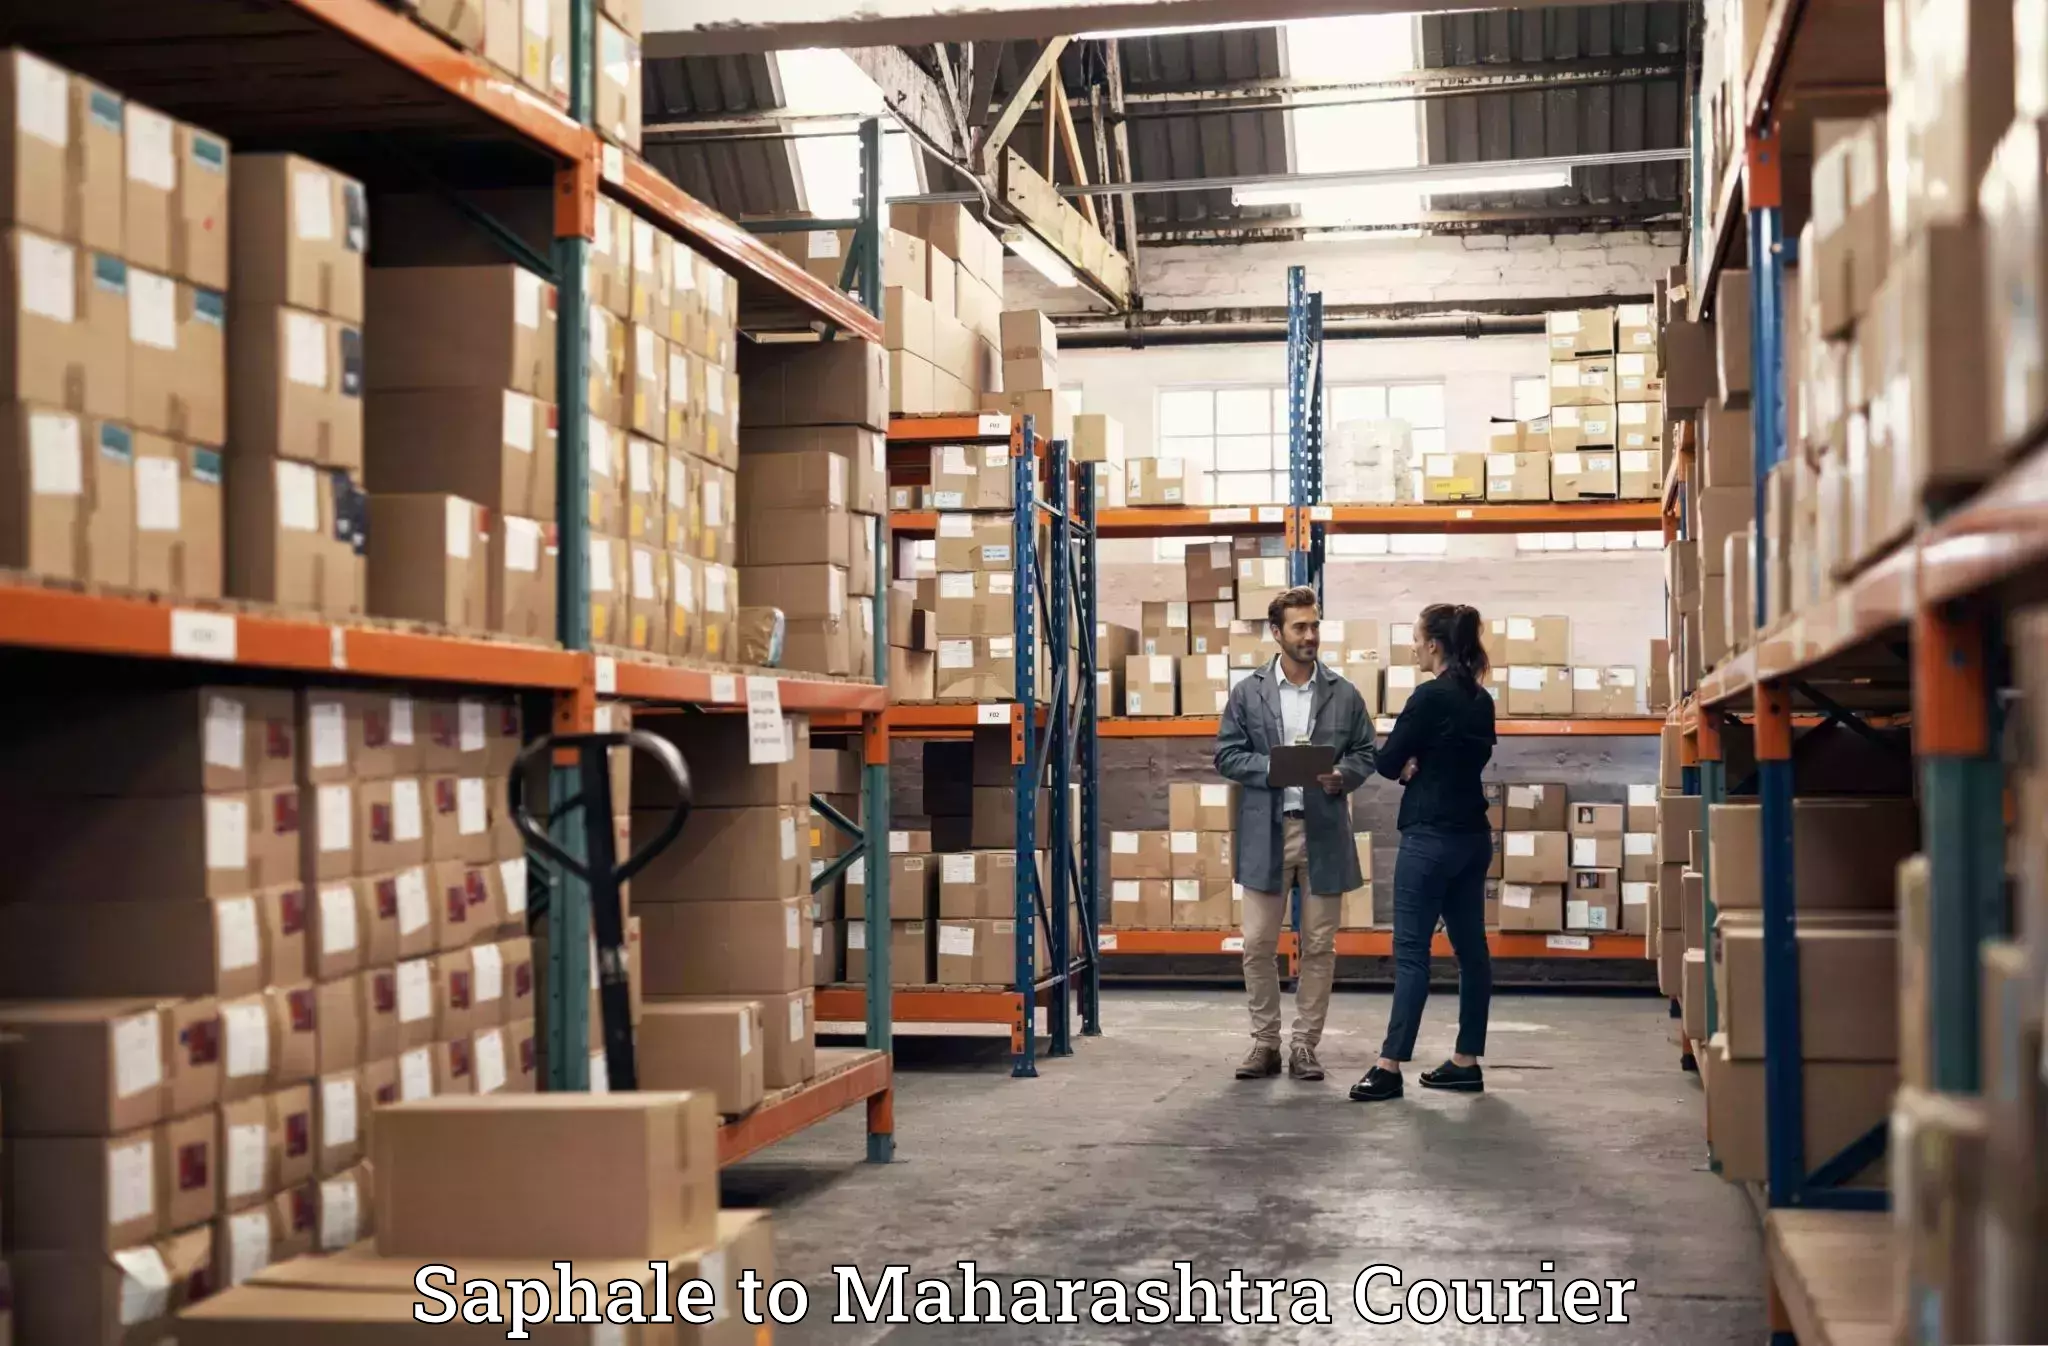 Luggage shipment specialists Saphale to Mumbai University